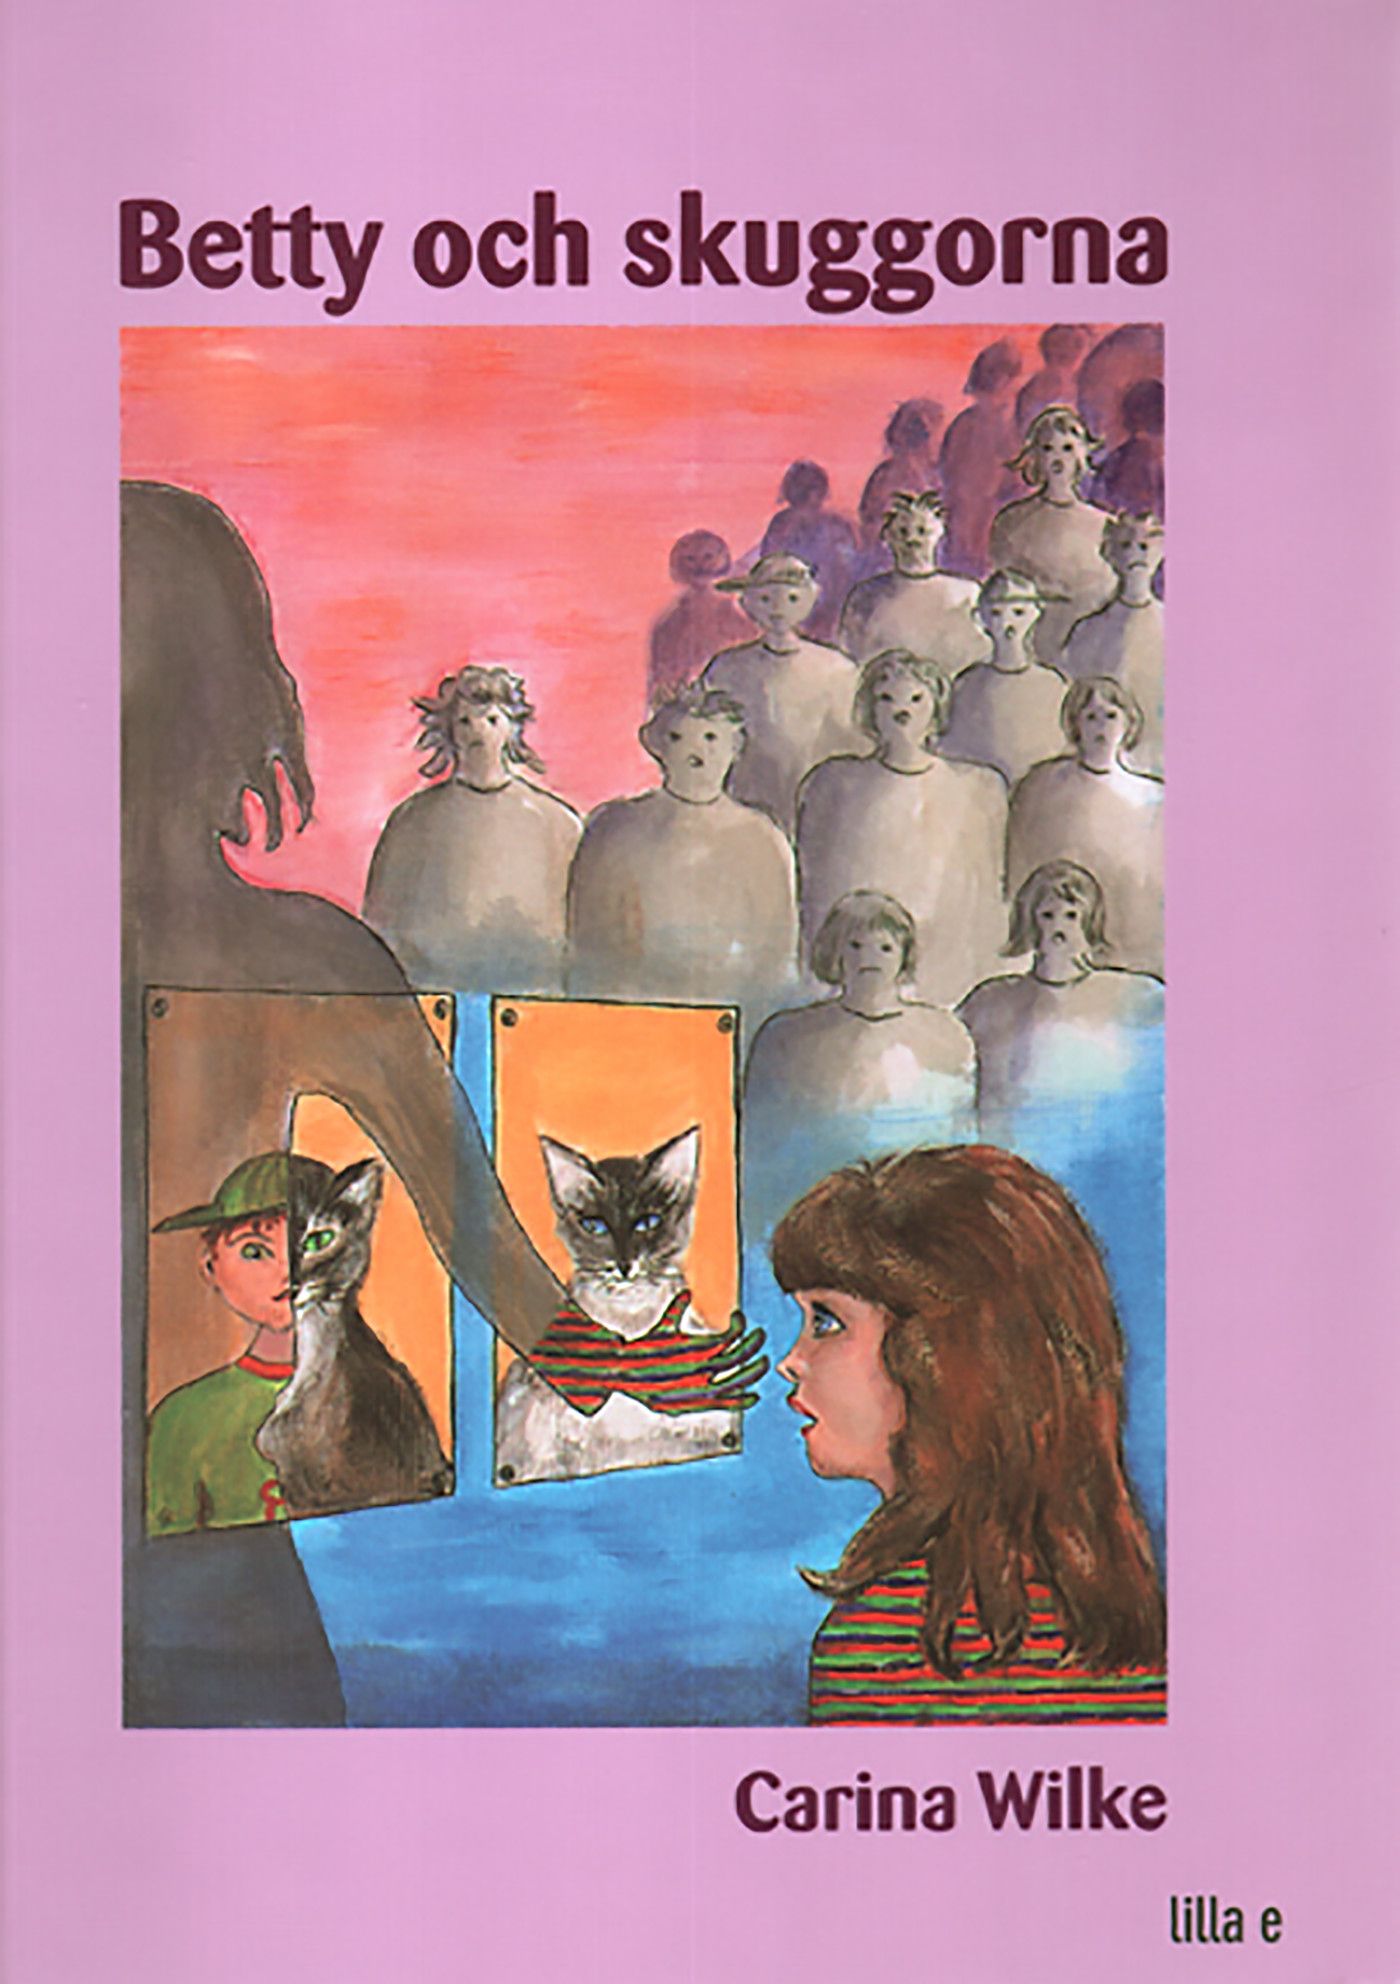 Betty och skuggorna, eBook by Carina Wilke